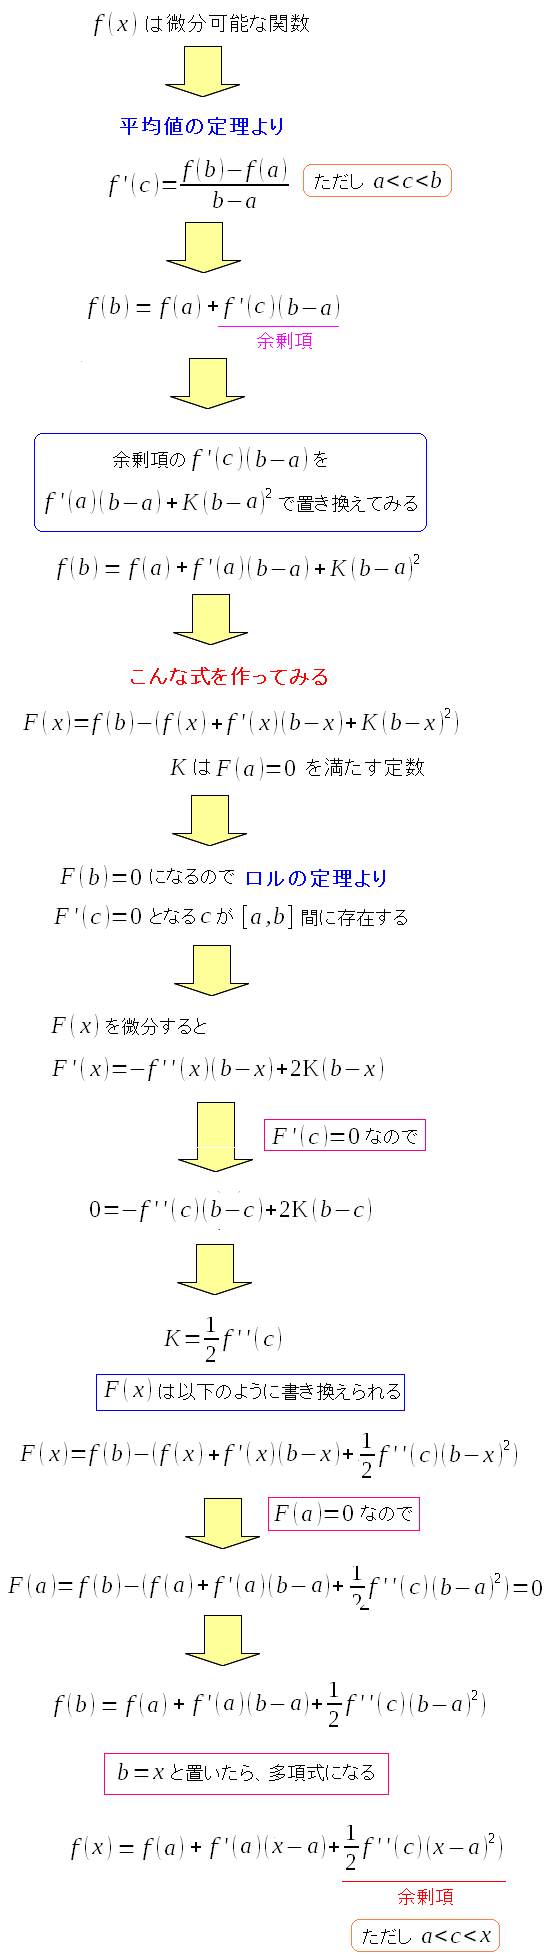 ロルの定理を使って、より関数を具体化していく